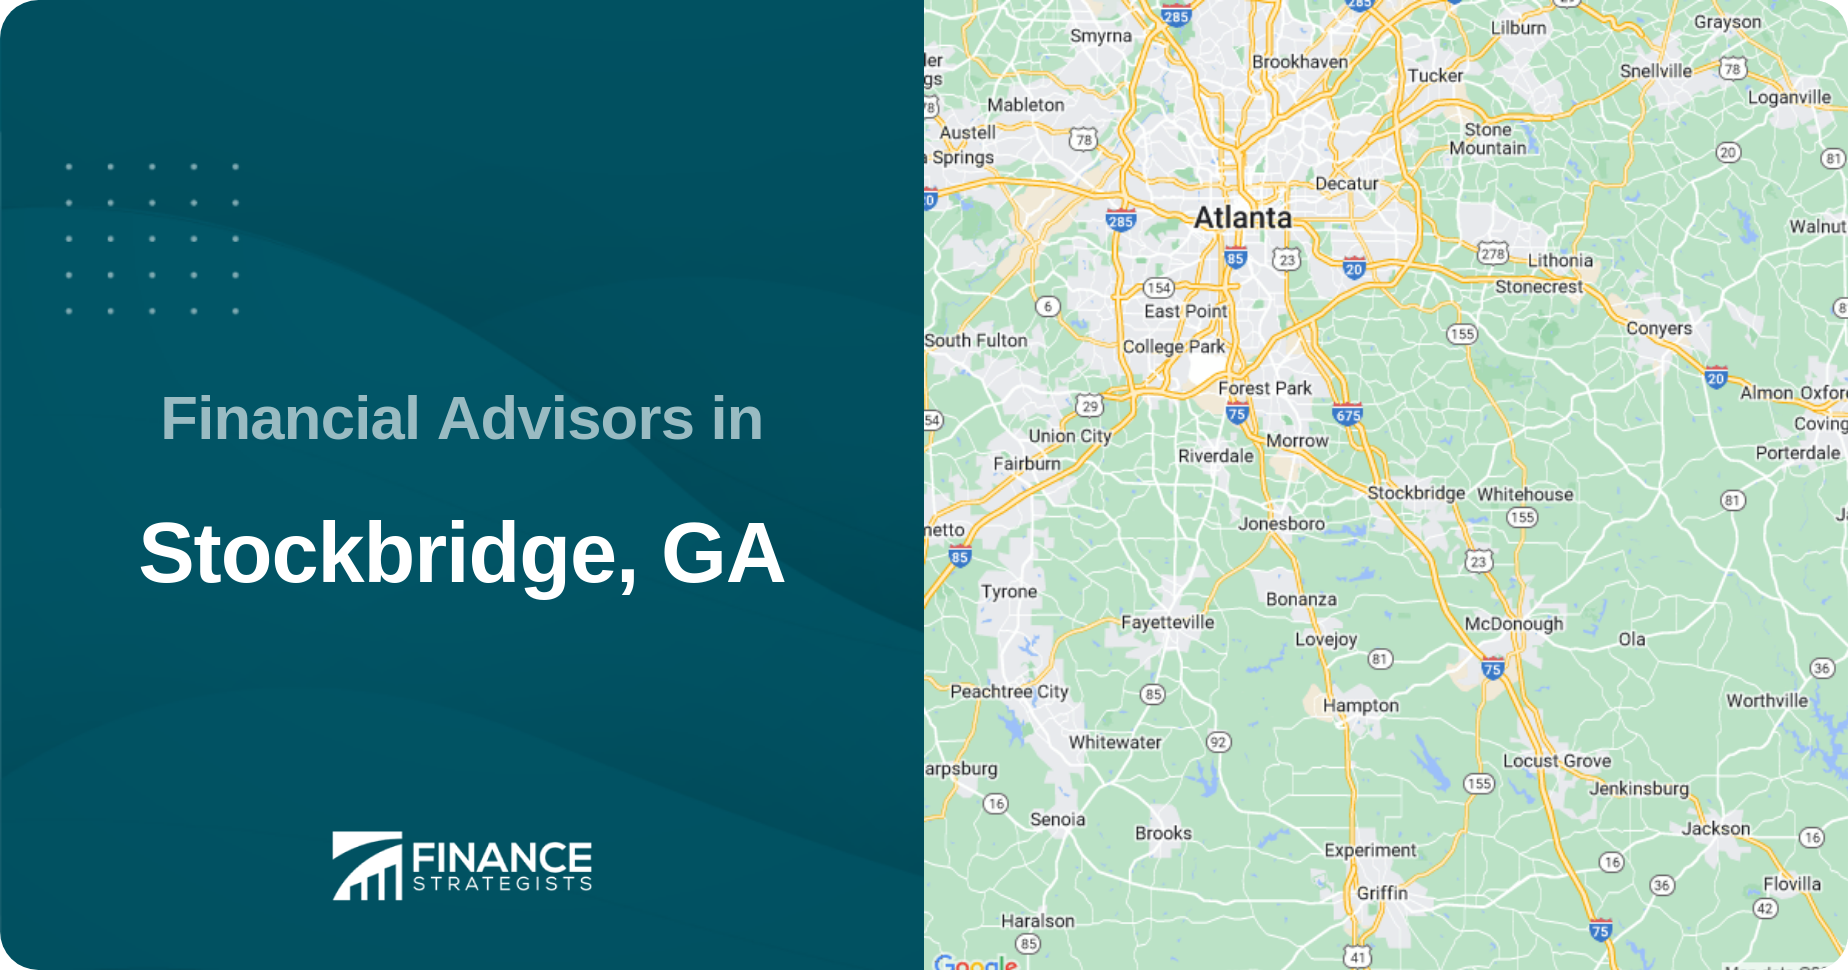 Financial Advisors in Stockbridge, GA